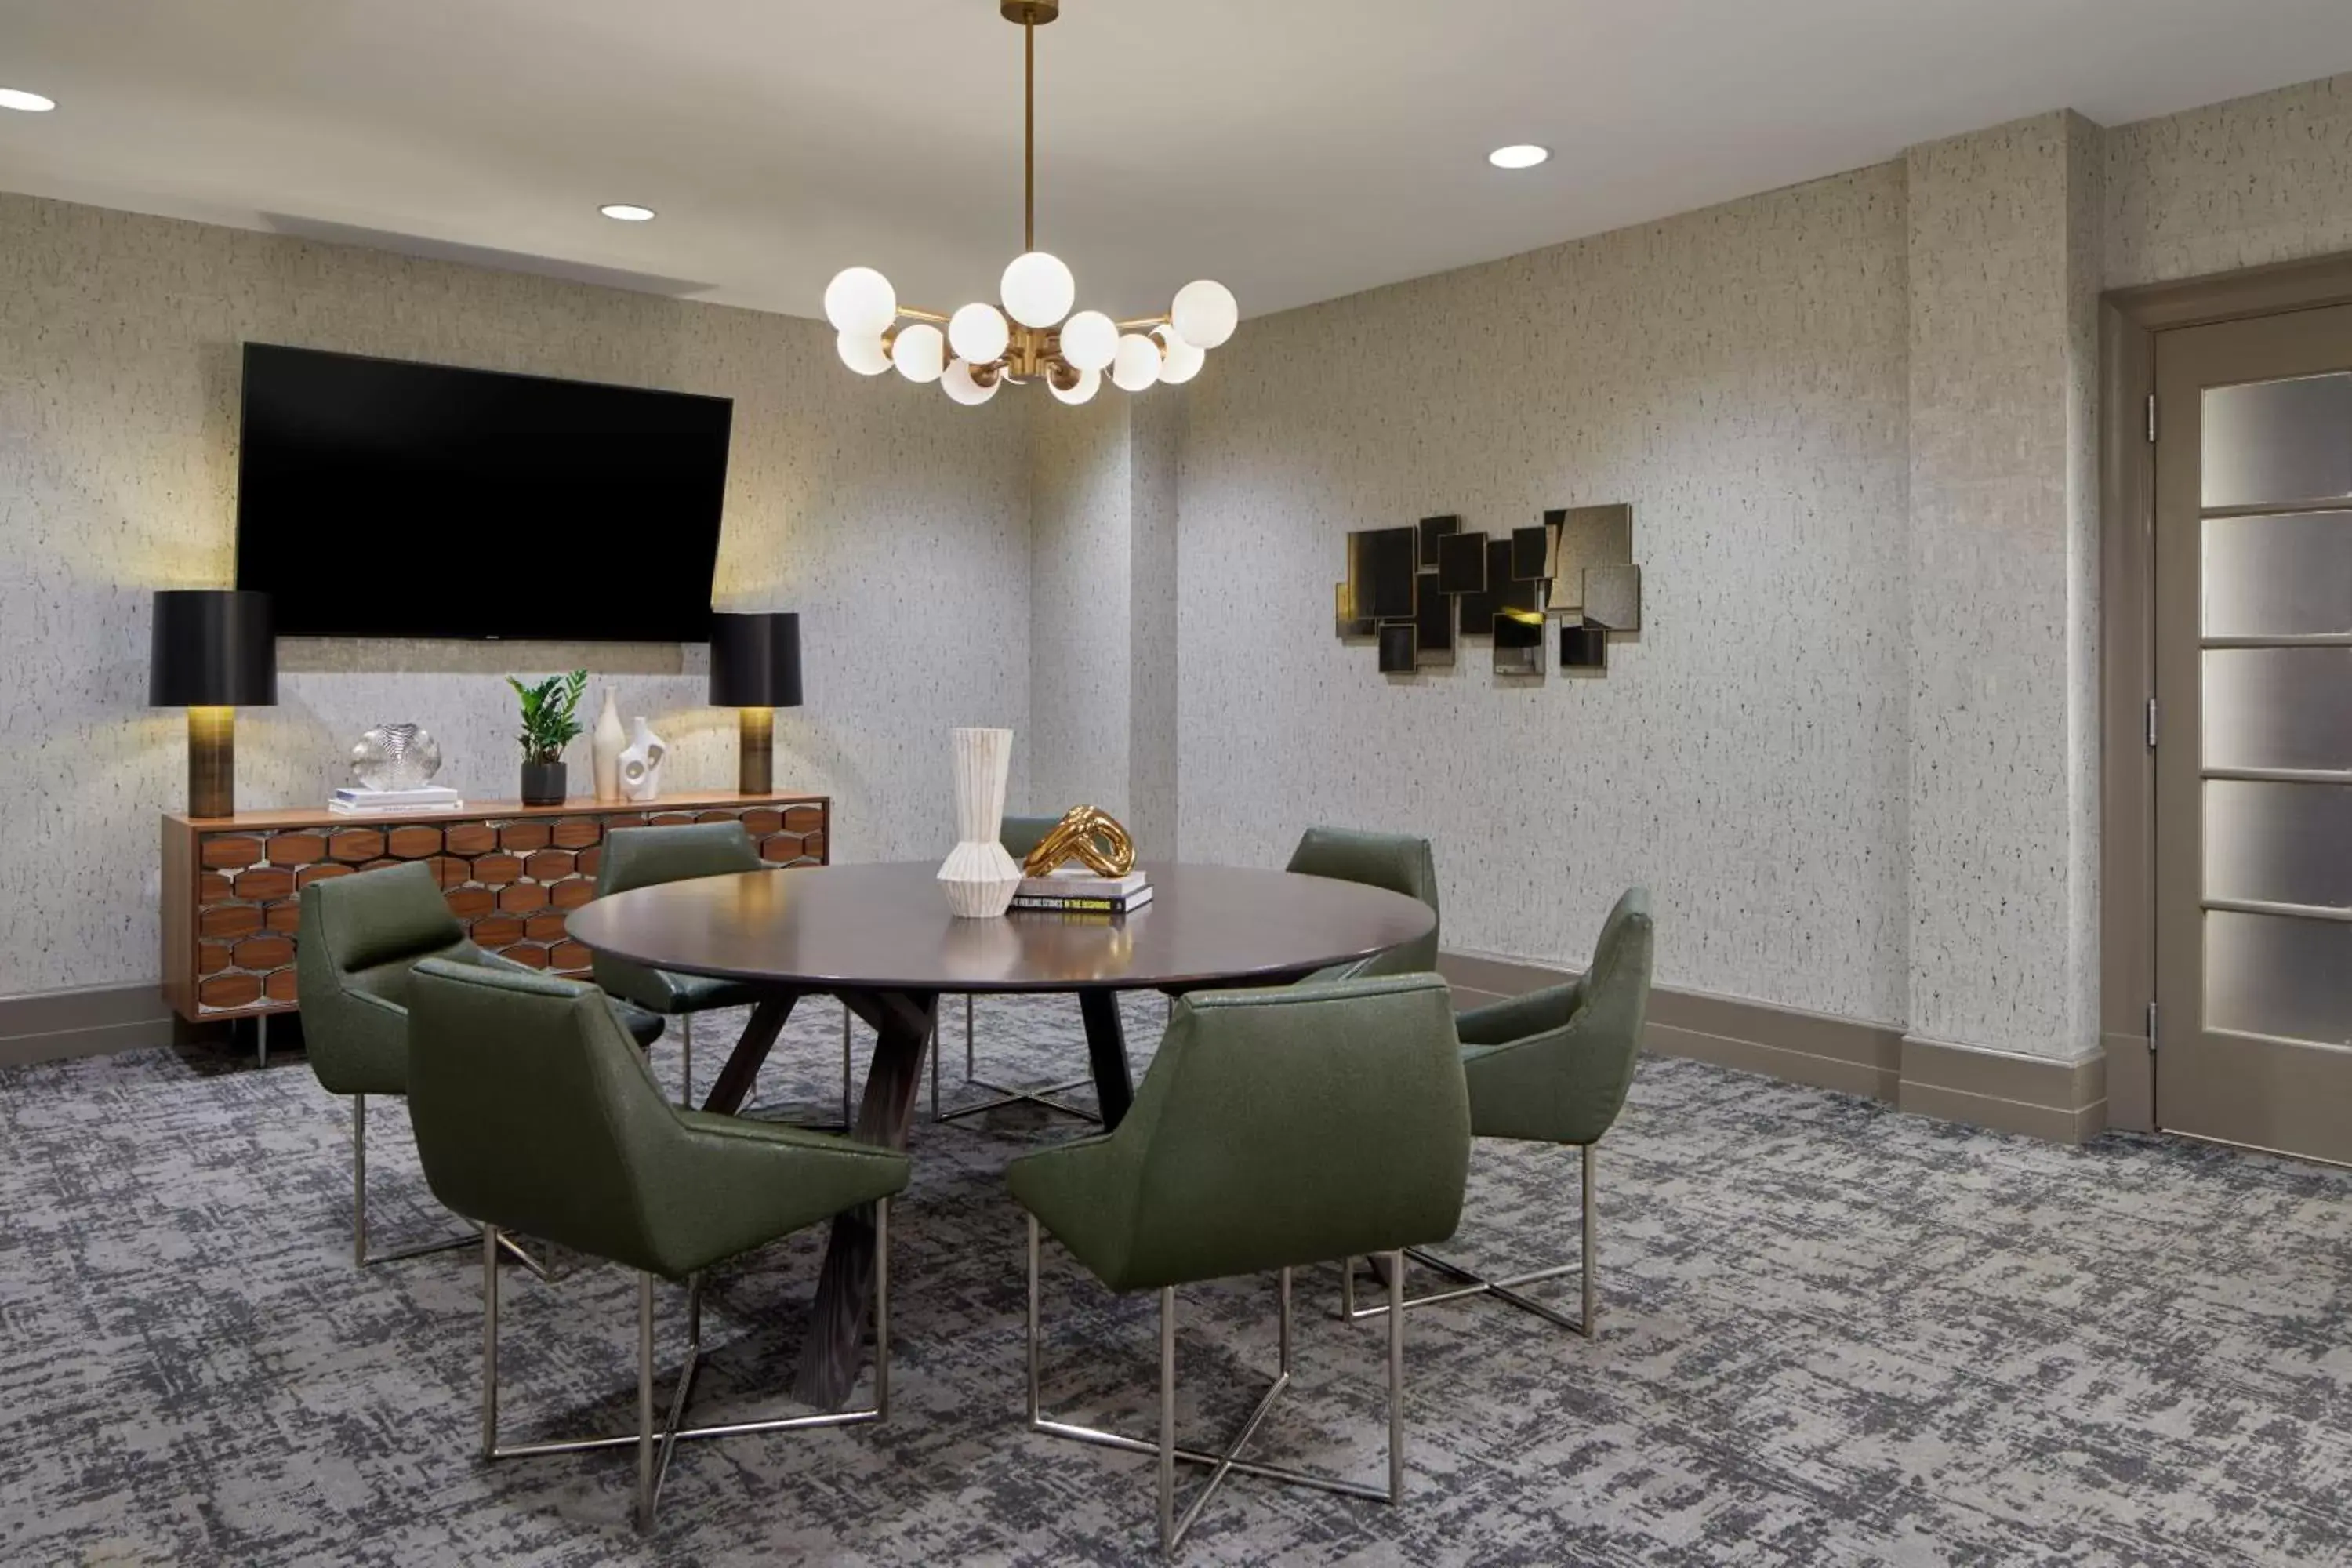 Meeting/conference room, Dining Area in Atlanta Marriott Alpharetta